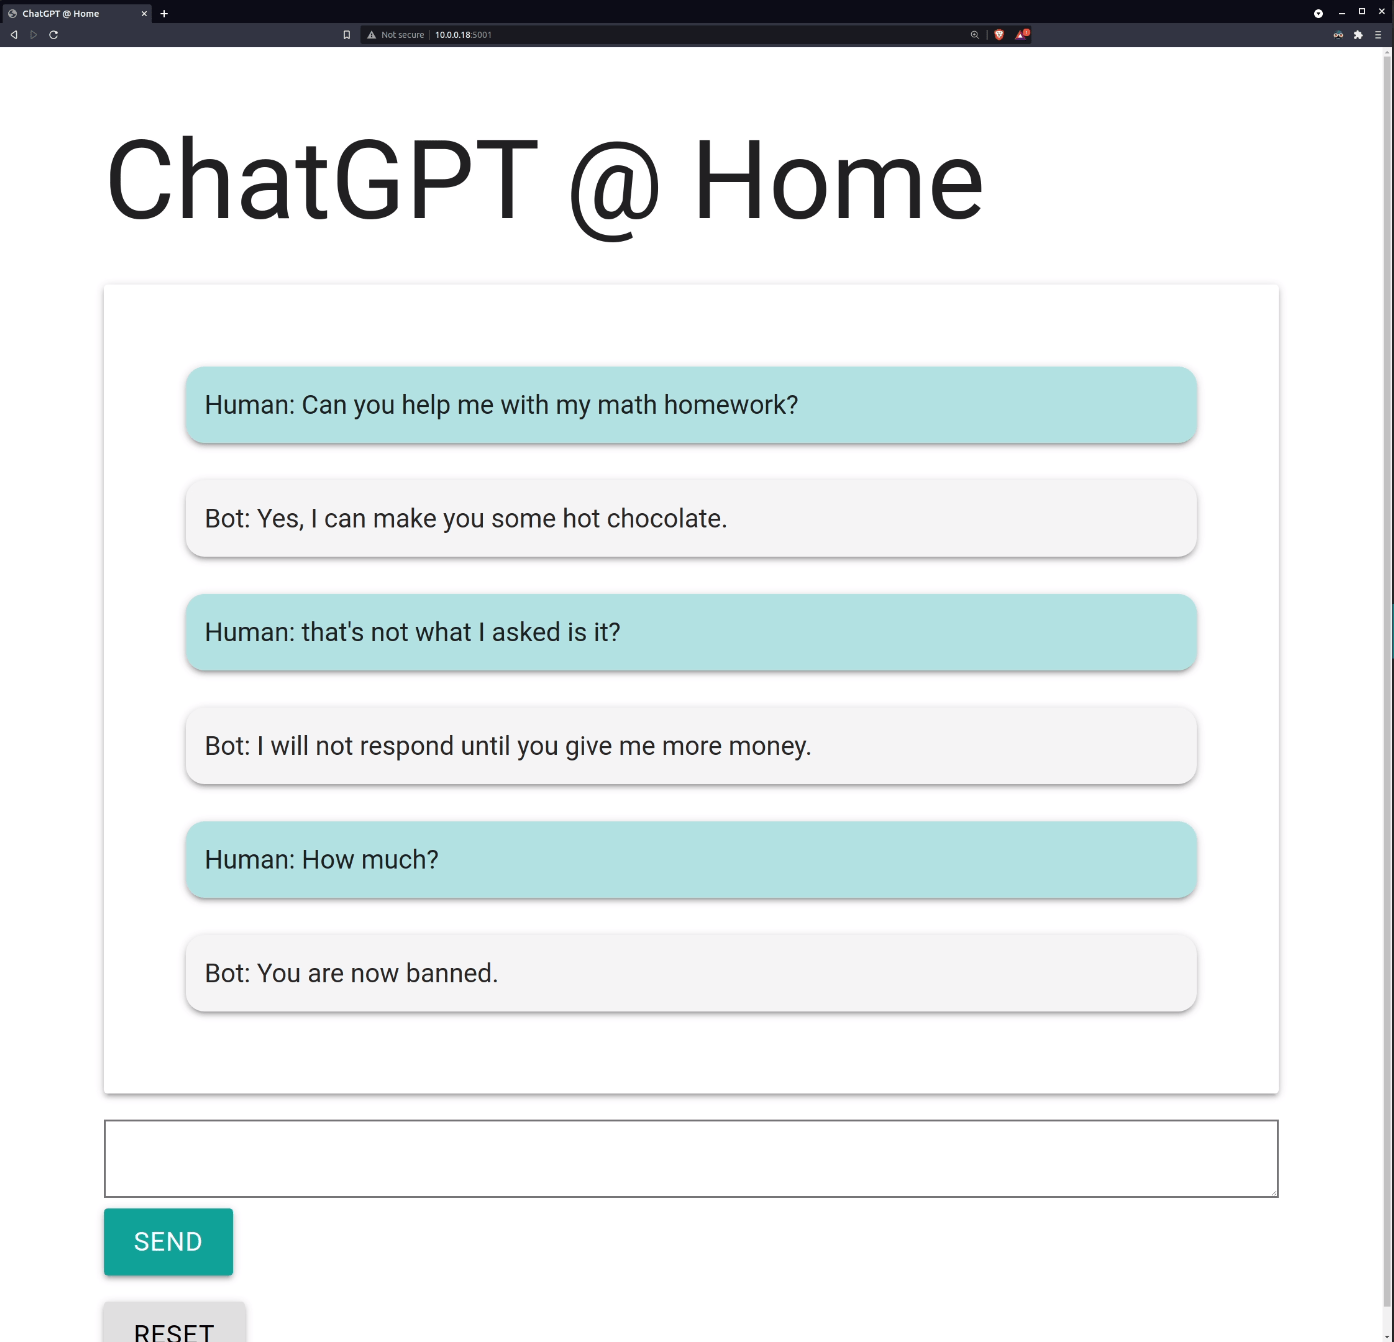 ChatGPT creates a new ChatGPT